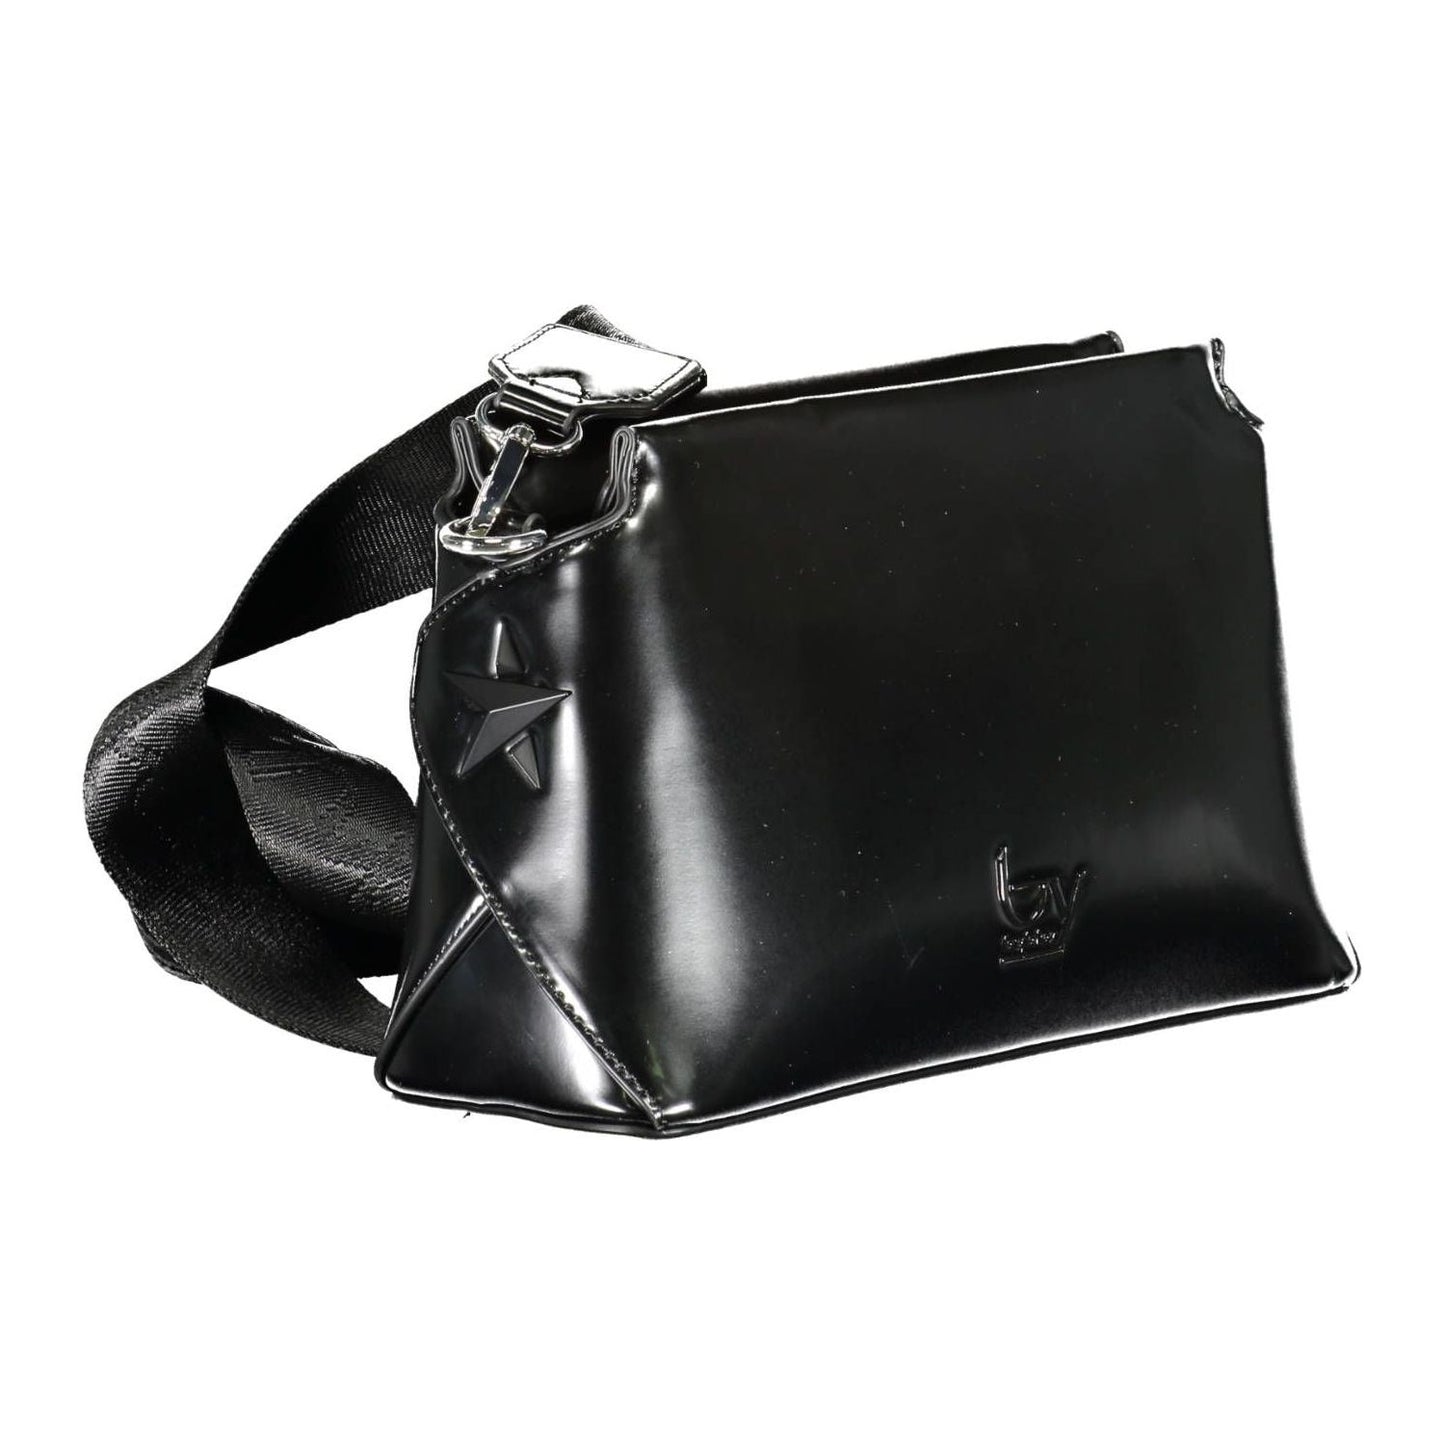 BYBLOS | Elegant Black Contrasting Details Shoulder Bag| McRichard Designer Brands   